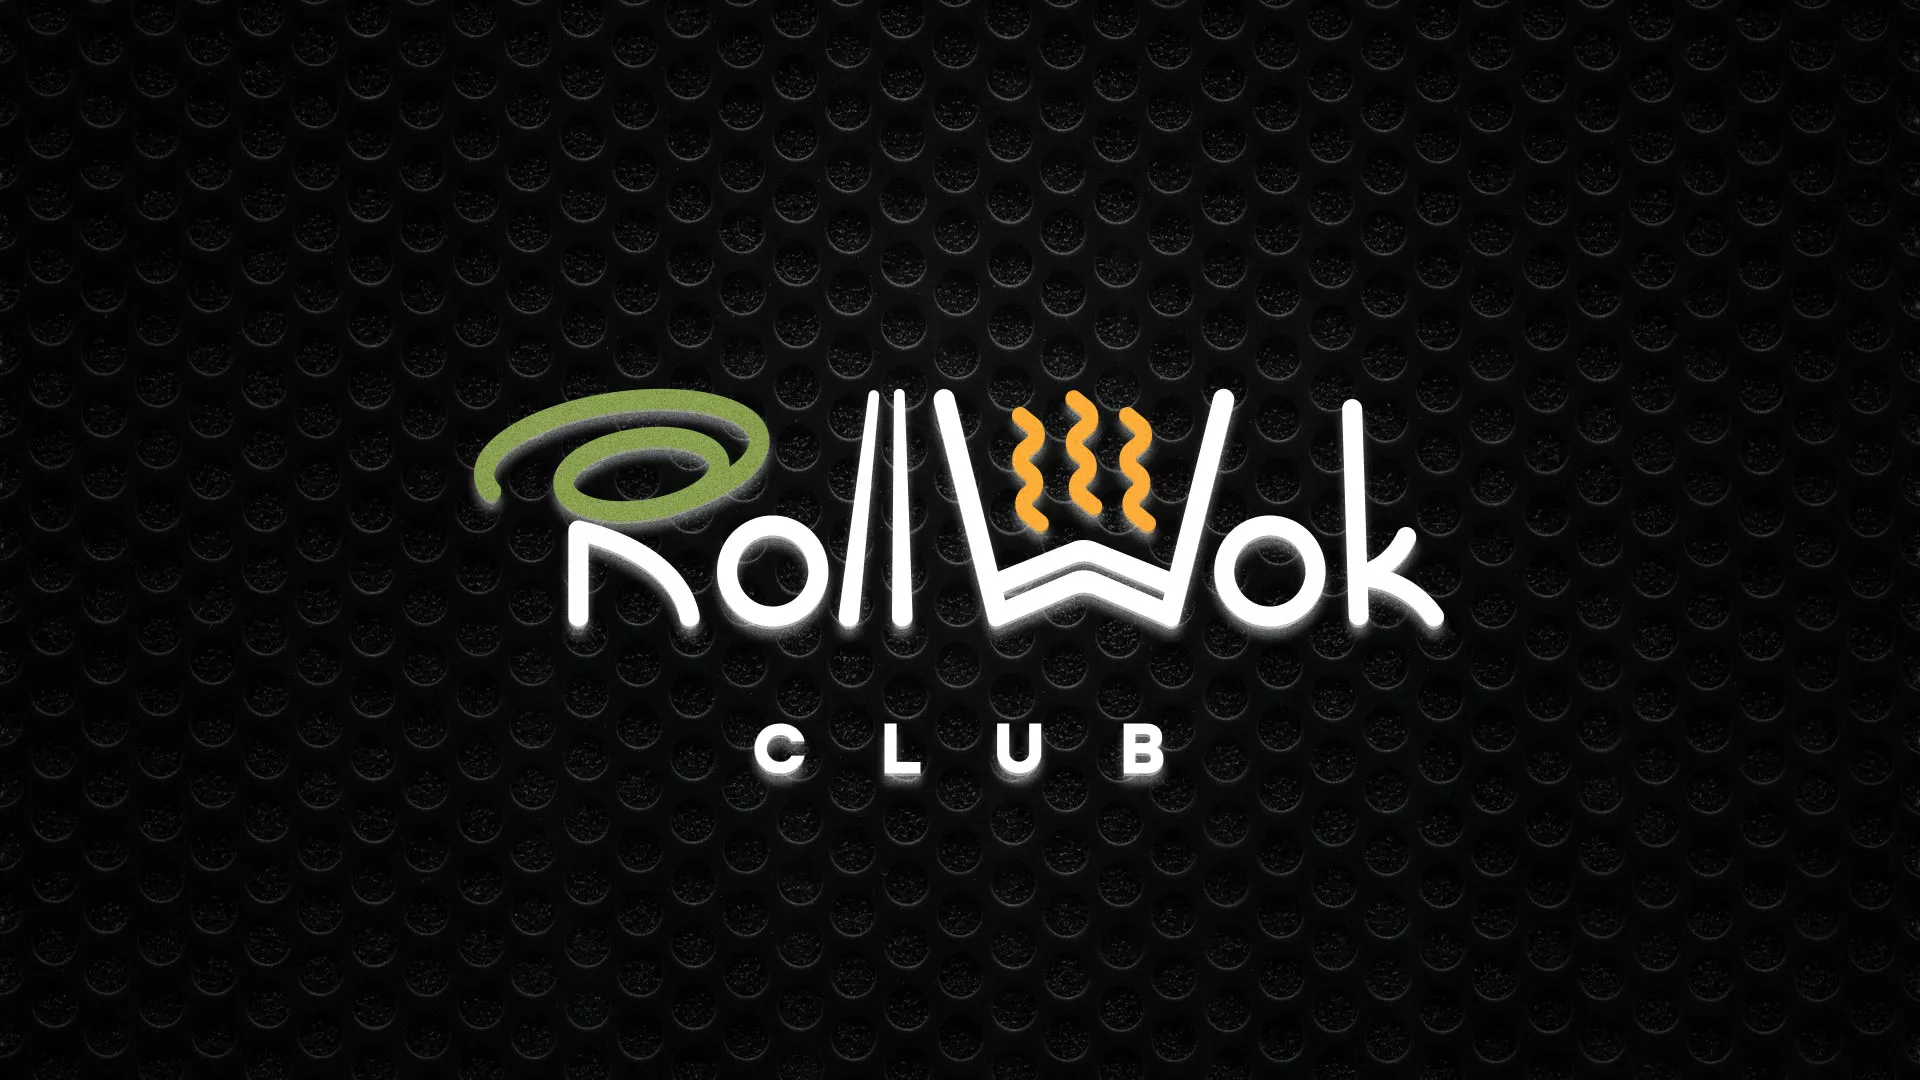 Брендирование торговых точек суши-бара «Roll Wok Club» в Зернограде